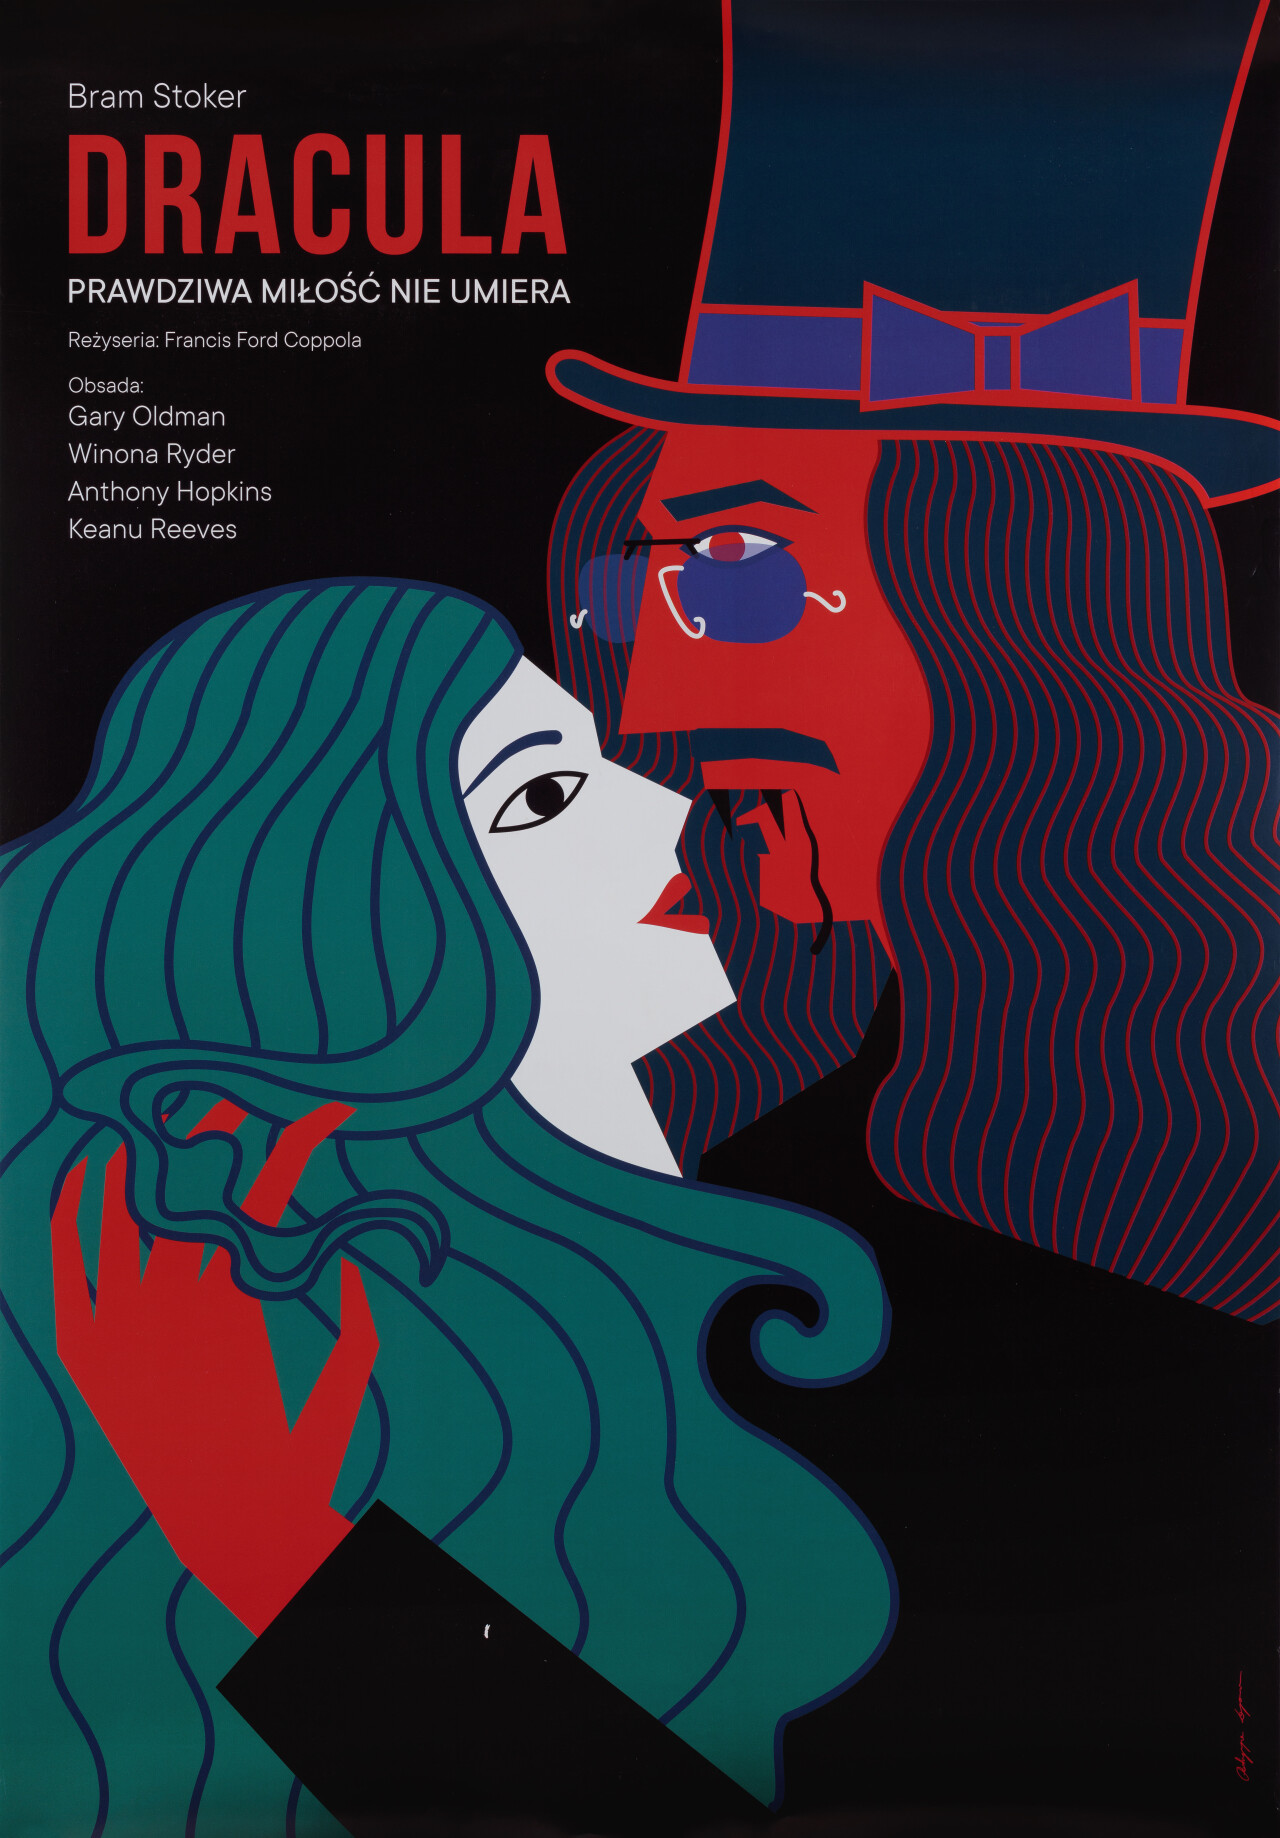 Дракула (Dracula, 1992), режиссёр Фрэнсис Форд Коппола, польский постер к фильму, автор Патриция Лонгава (графический дизайн, 2019 год)